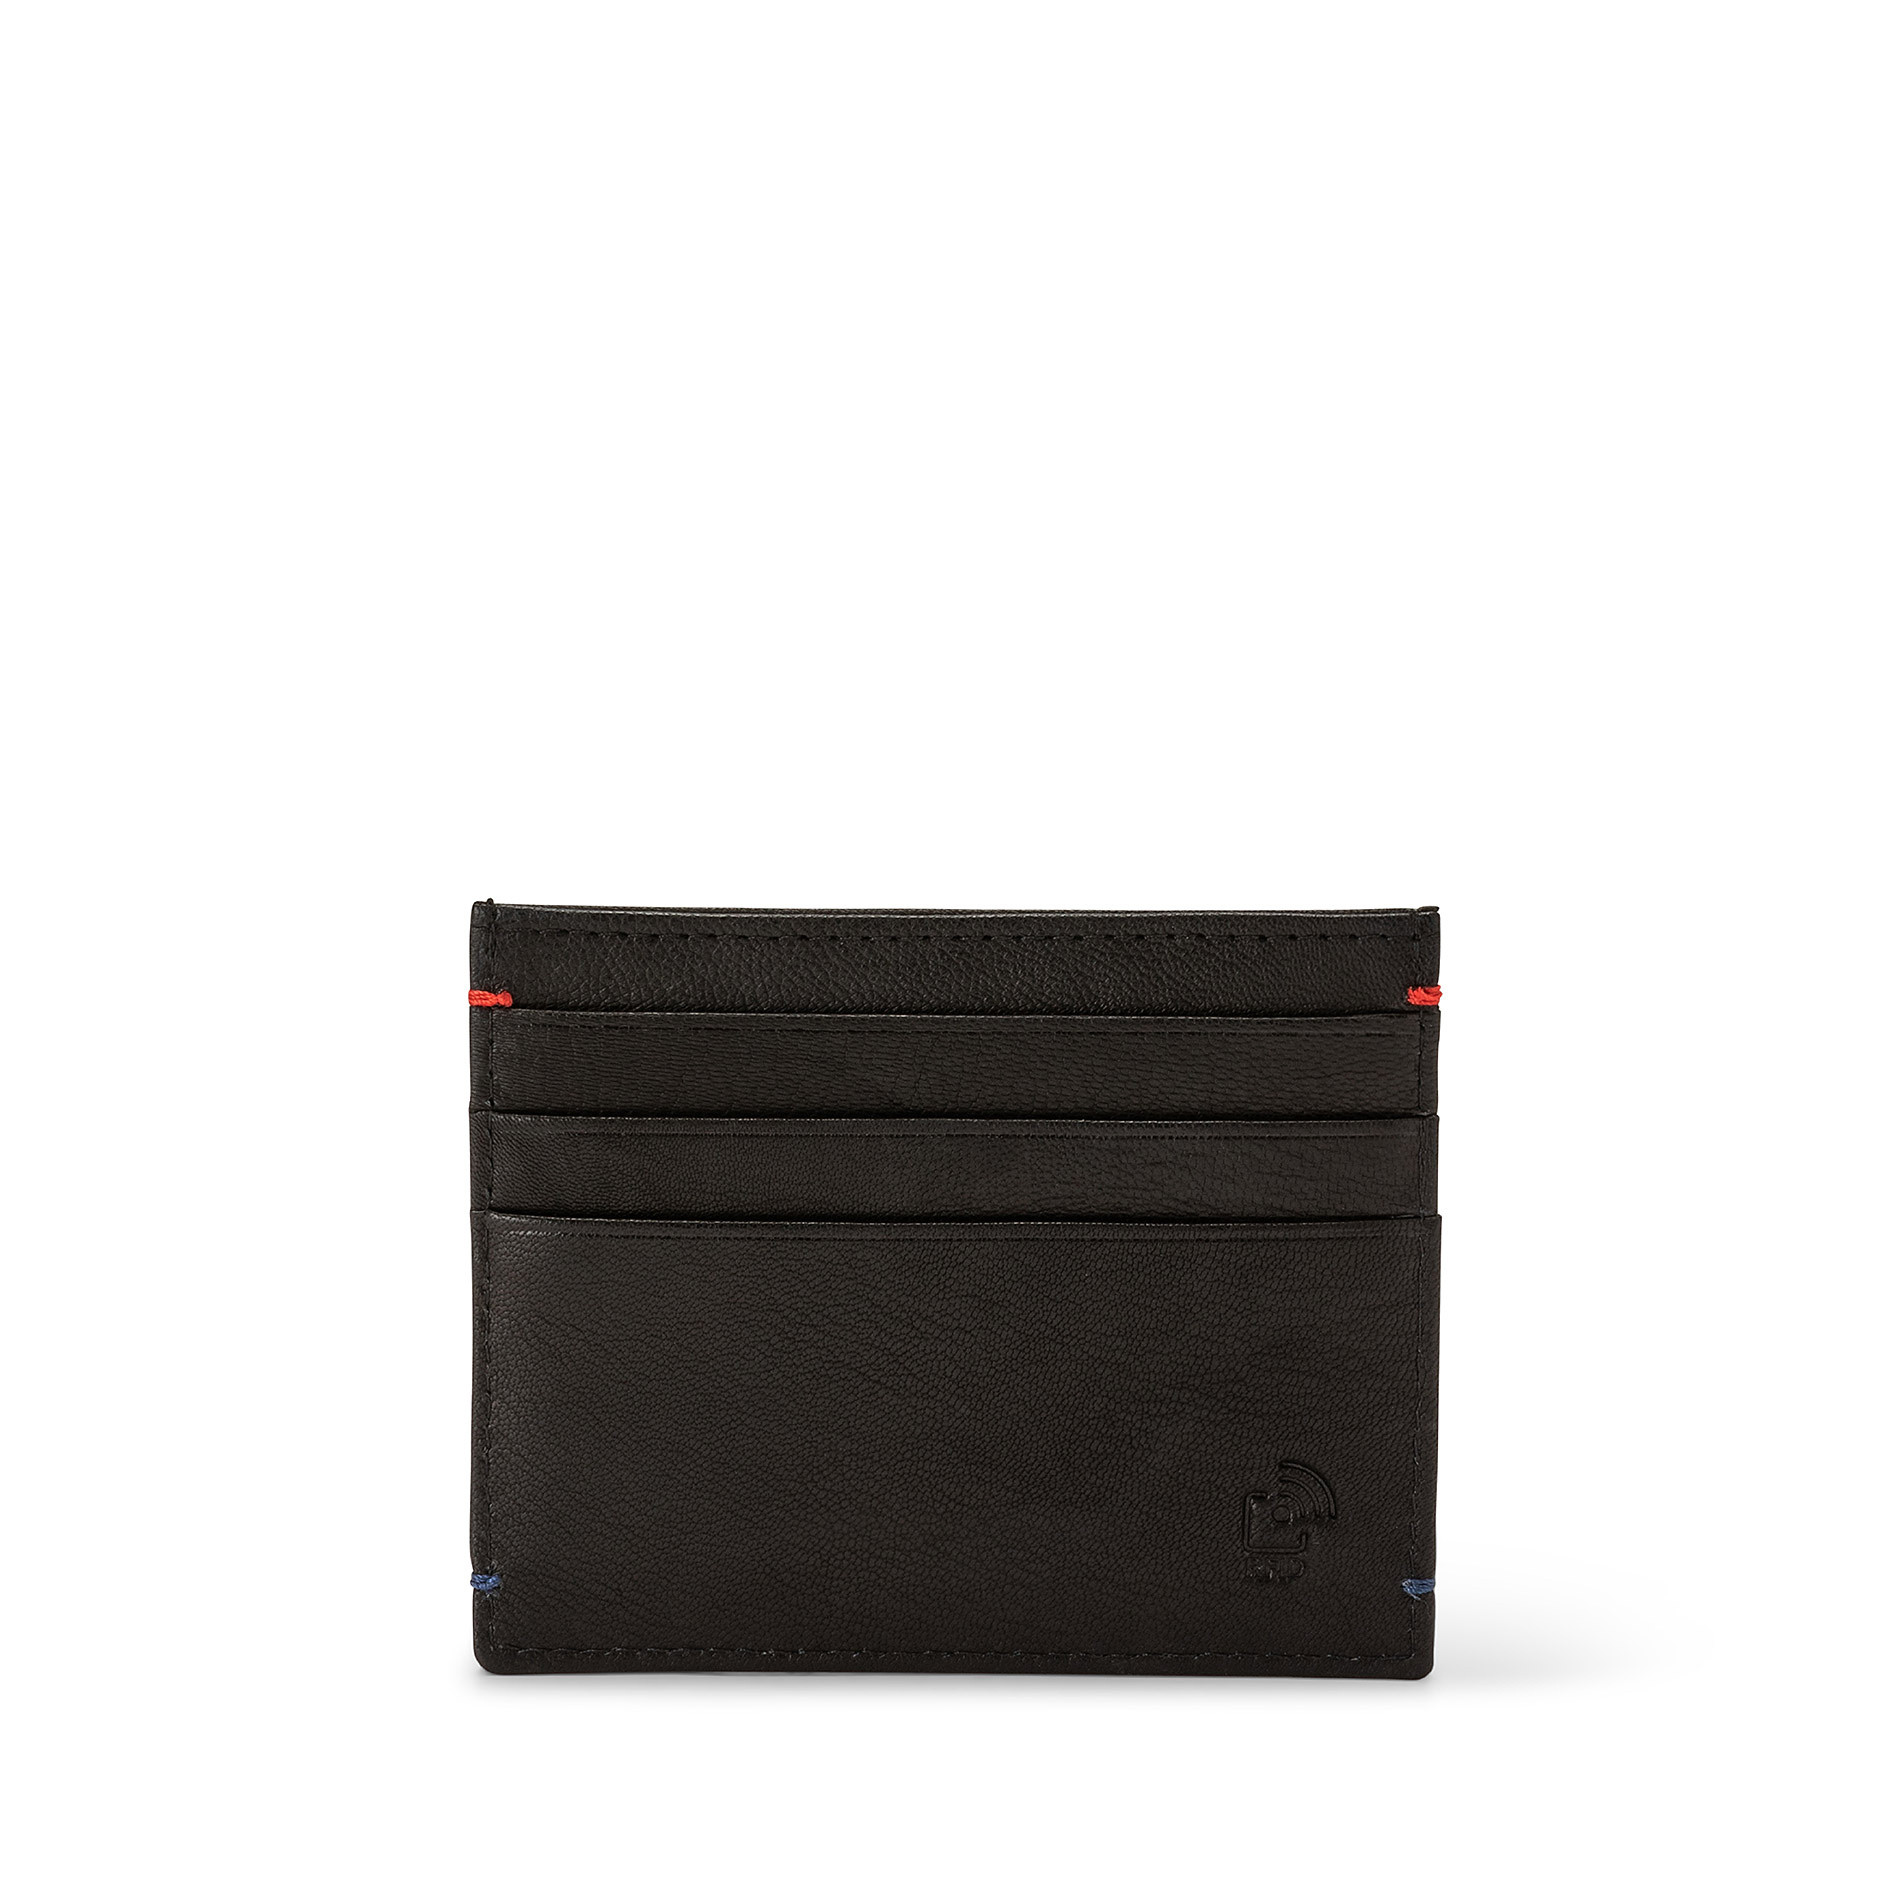 Luca D'Altieri leather credit card holder, Black, large image number 2